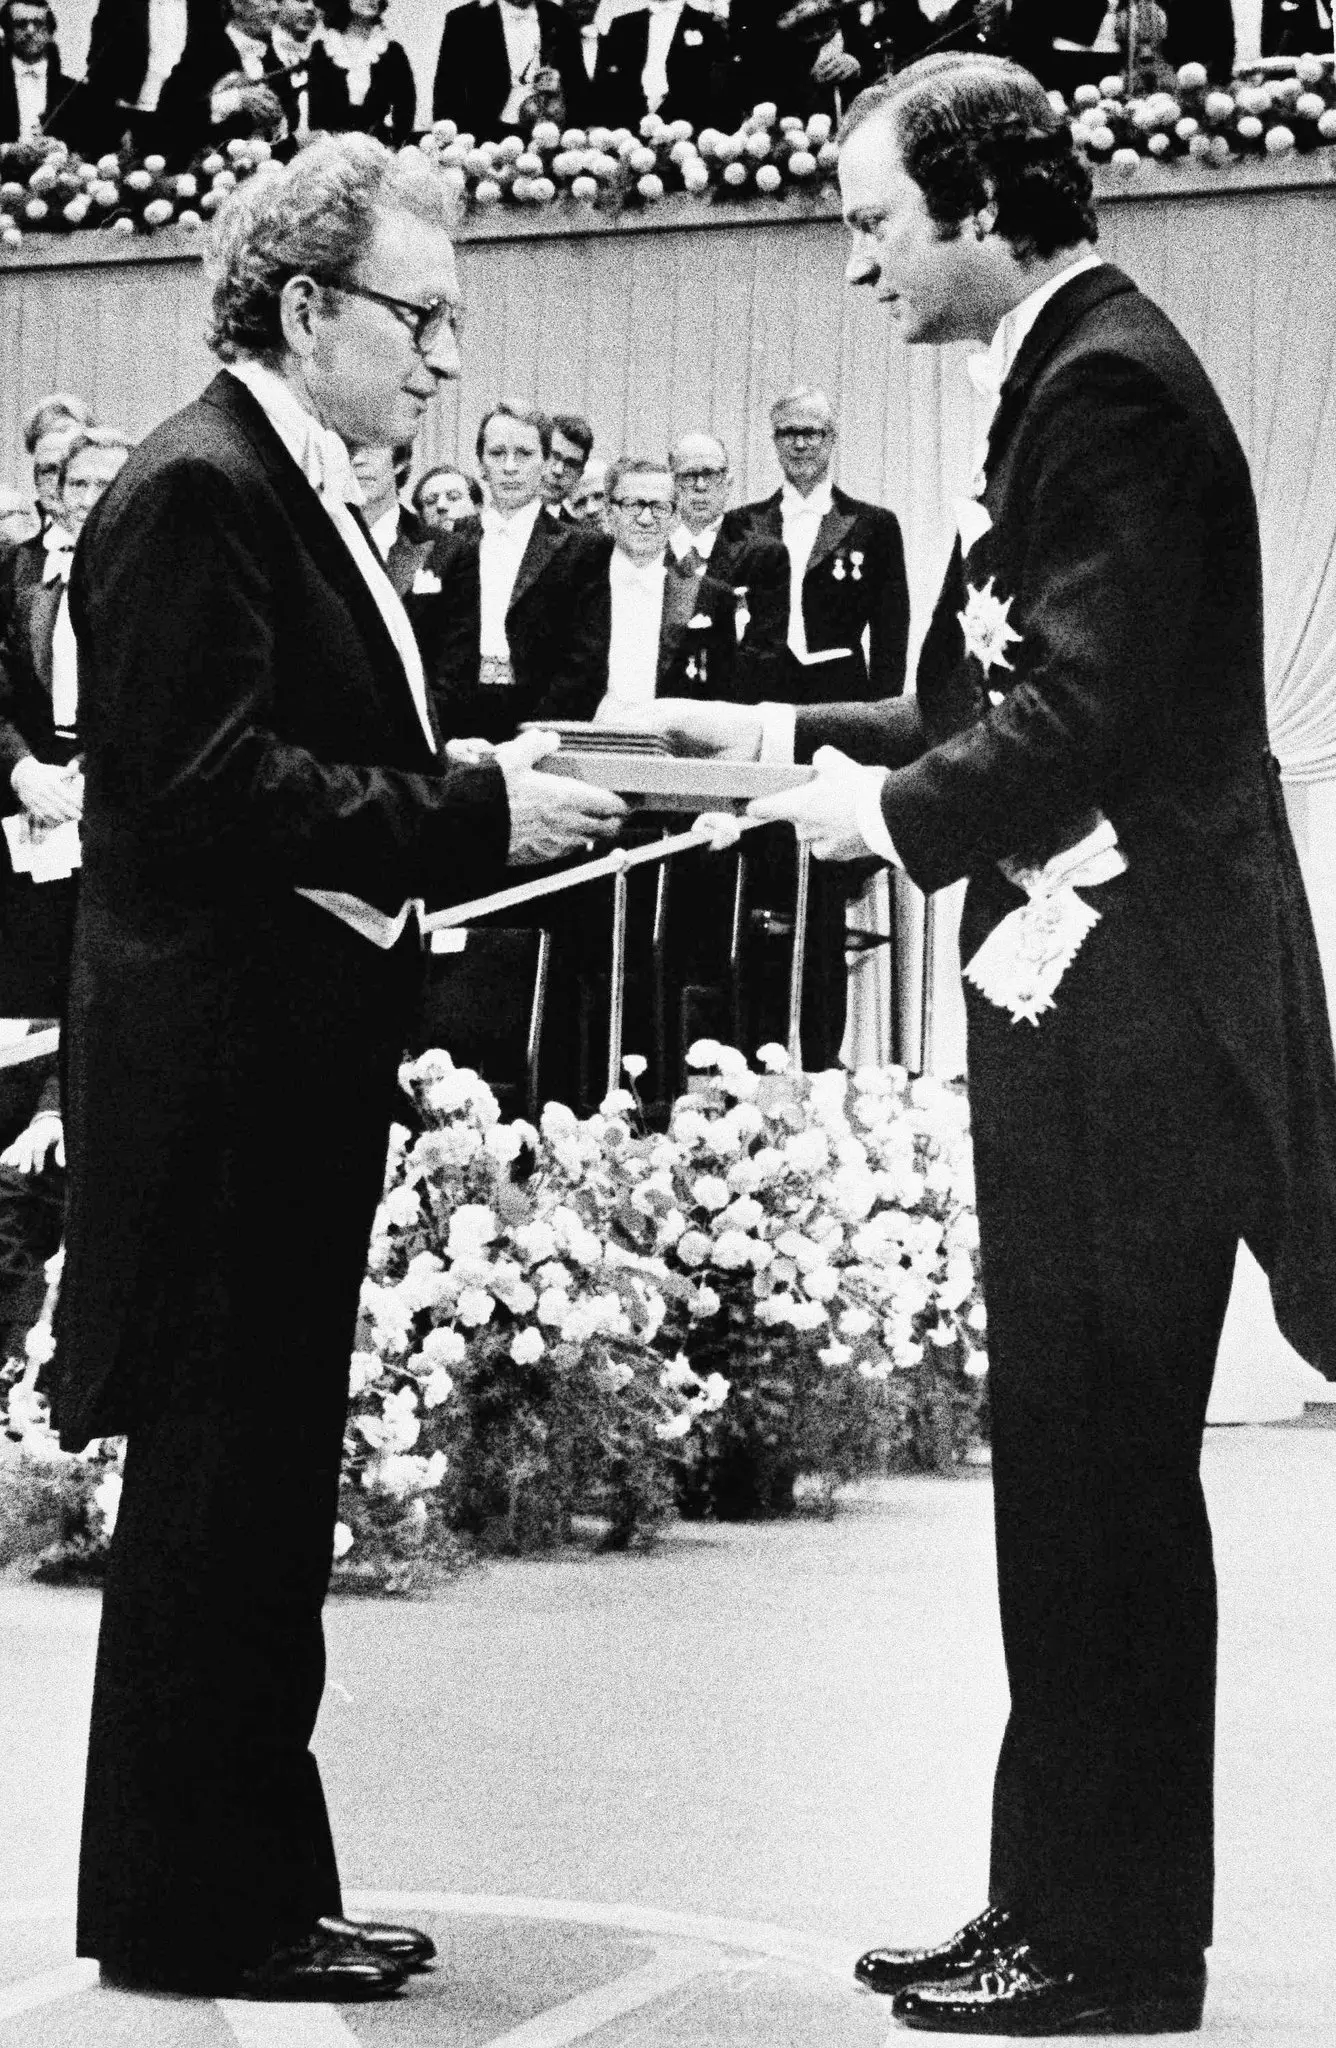 Philip Warren Anderson, à esquerda, recebeu sua parte do Prêmio Nobel do Rei Carl Gustaf da Suécia durante uma cerimônia em Estocolmo em dezembro de 1977. “Anderson foi o preeminente teórico da matéria condensada de sua época - um dia que durou mais de 50 anos. anos”, disse um colega. (Crédito da fotografia: Cortesia © Copyright Peter Knopp/Associated Press/ REPRODUÇÃO/ TODOS OS DIREITOS RESERVADOS)